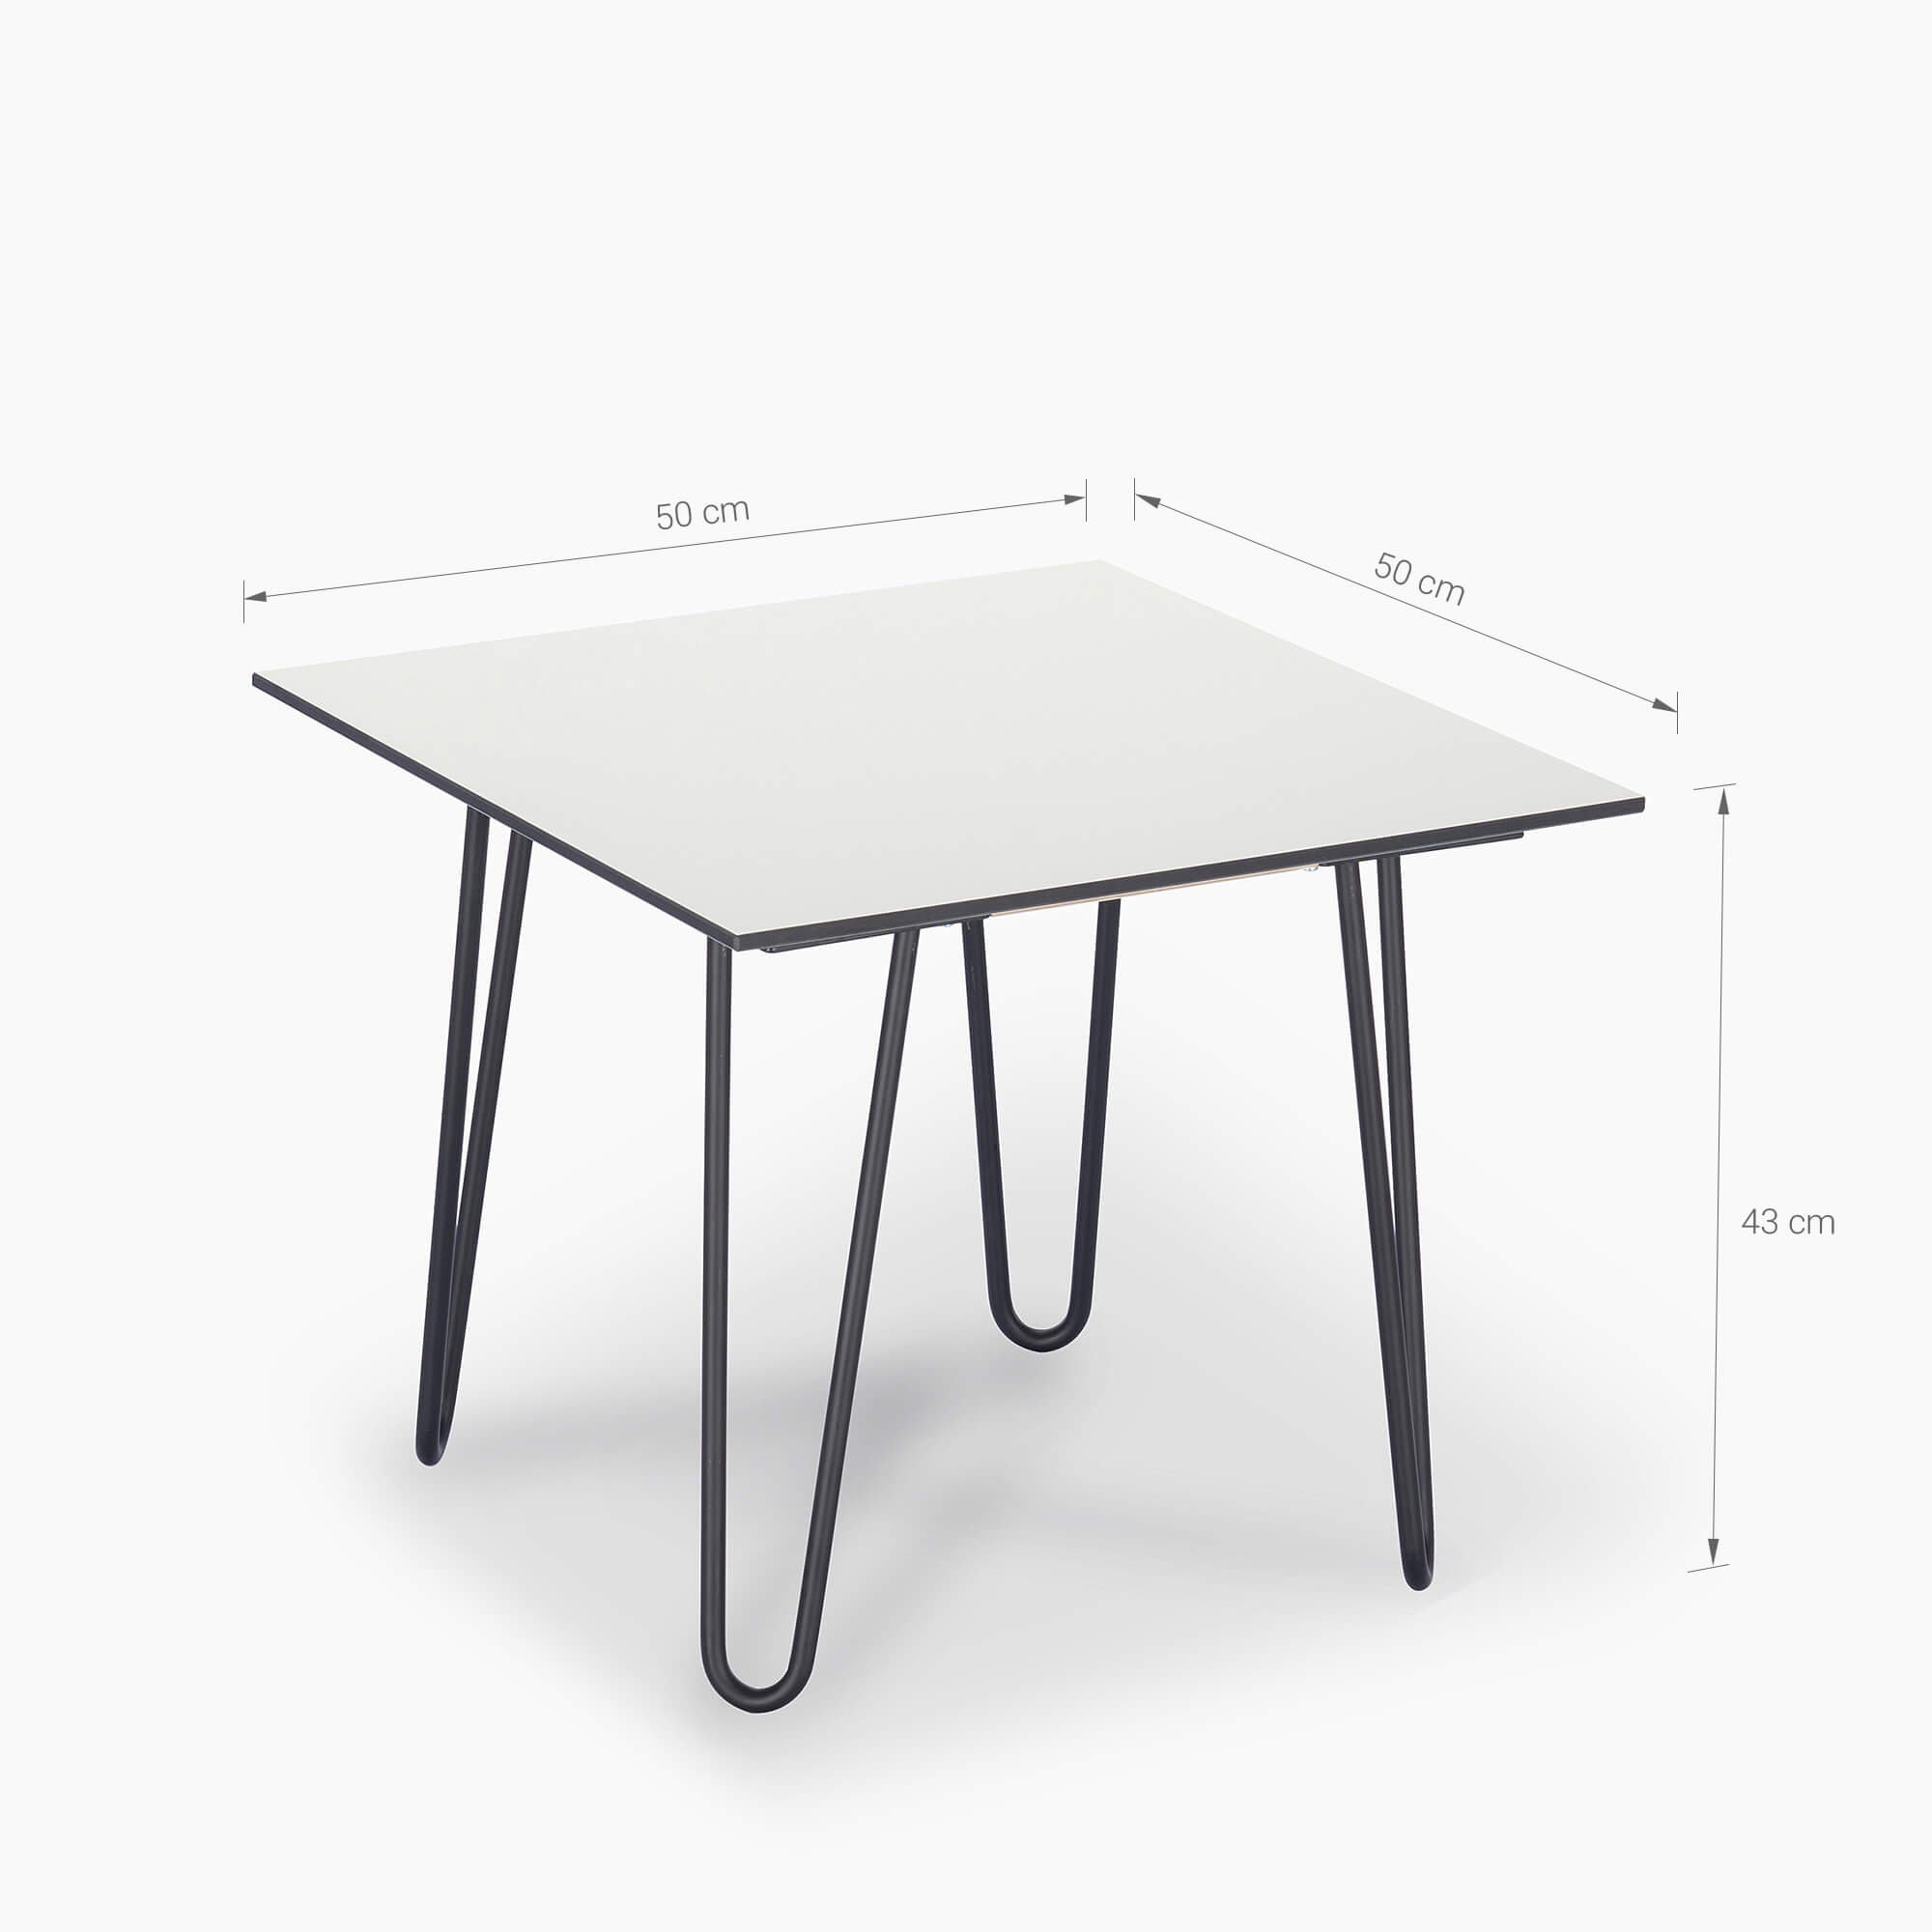 White-side-tables-for-living-room-50x50cm